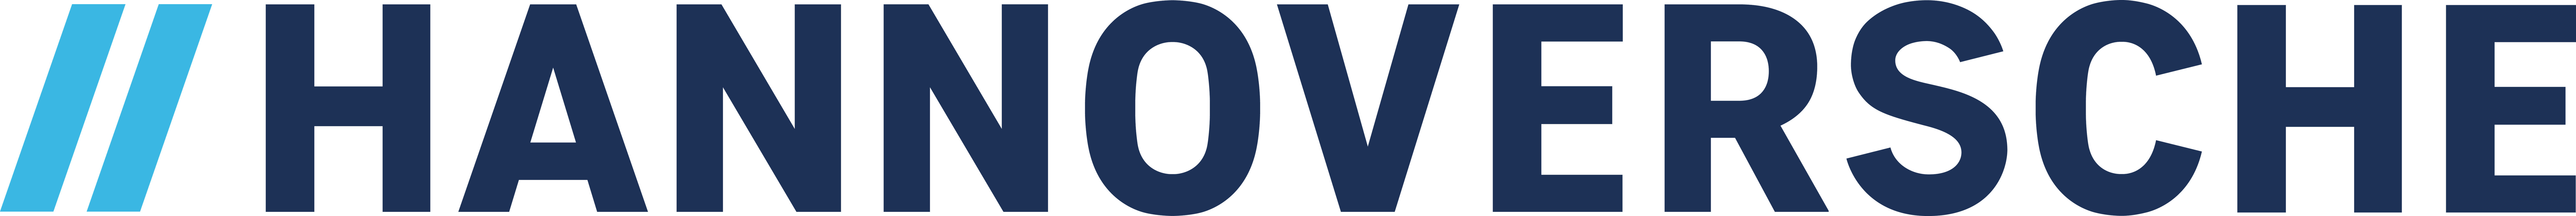 hannoversche-logo-2019